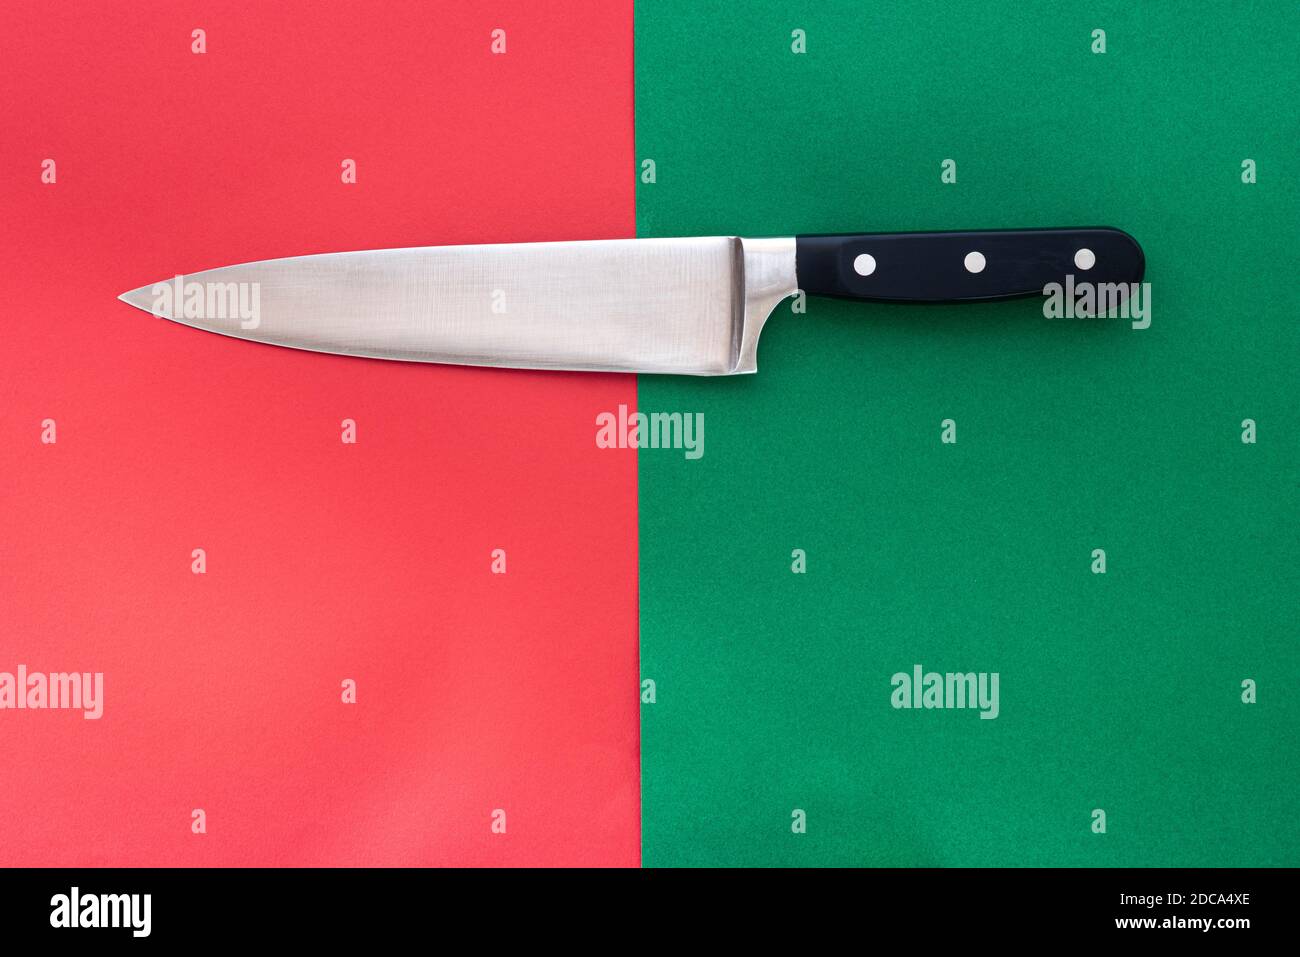 Con dao đục được thiết kế với lưỡi sắc bén để cắt thịt mỏng như giấy hoặc trang trí các loại thực phẩm khác. Chỉ cần nhìn hình minh họa bạn sẽ được thấy độ tinh tế và chuyên nghiệp của con dao chế biến thực phẩm này.